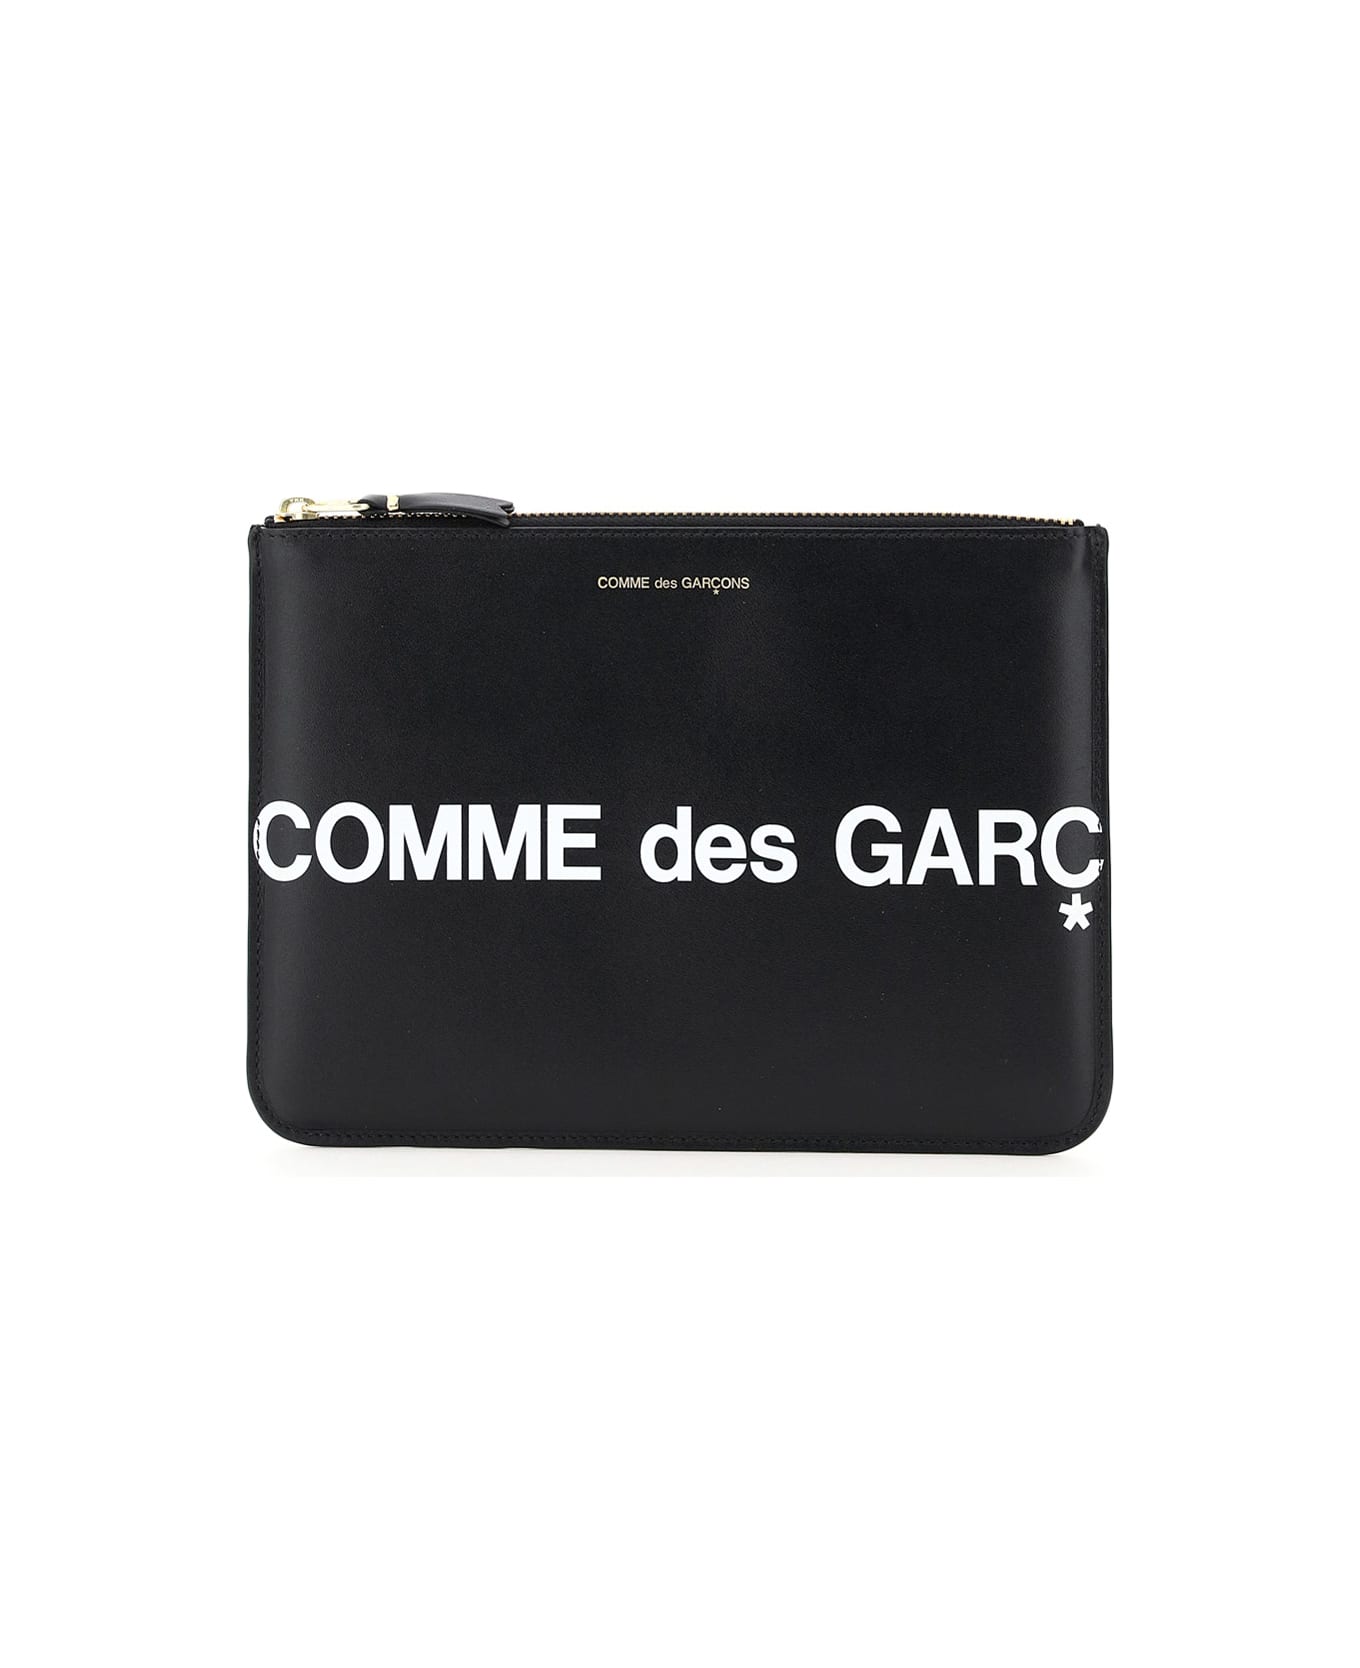 Comme des Garçons Wallet Leather Pouch With Logo - BLACK (Black)